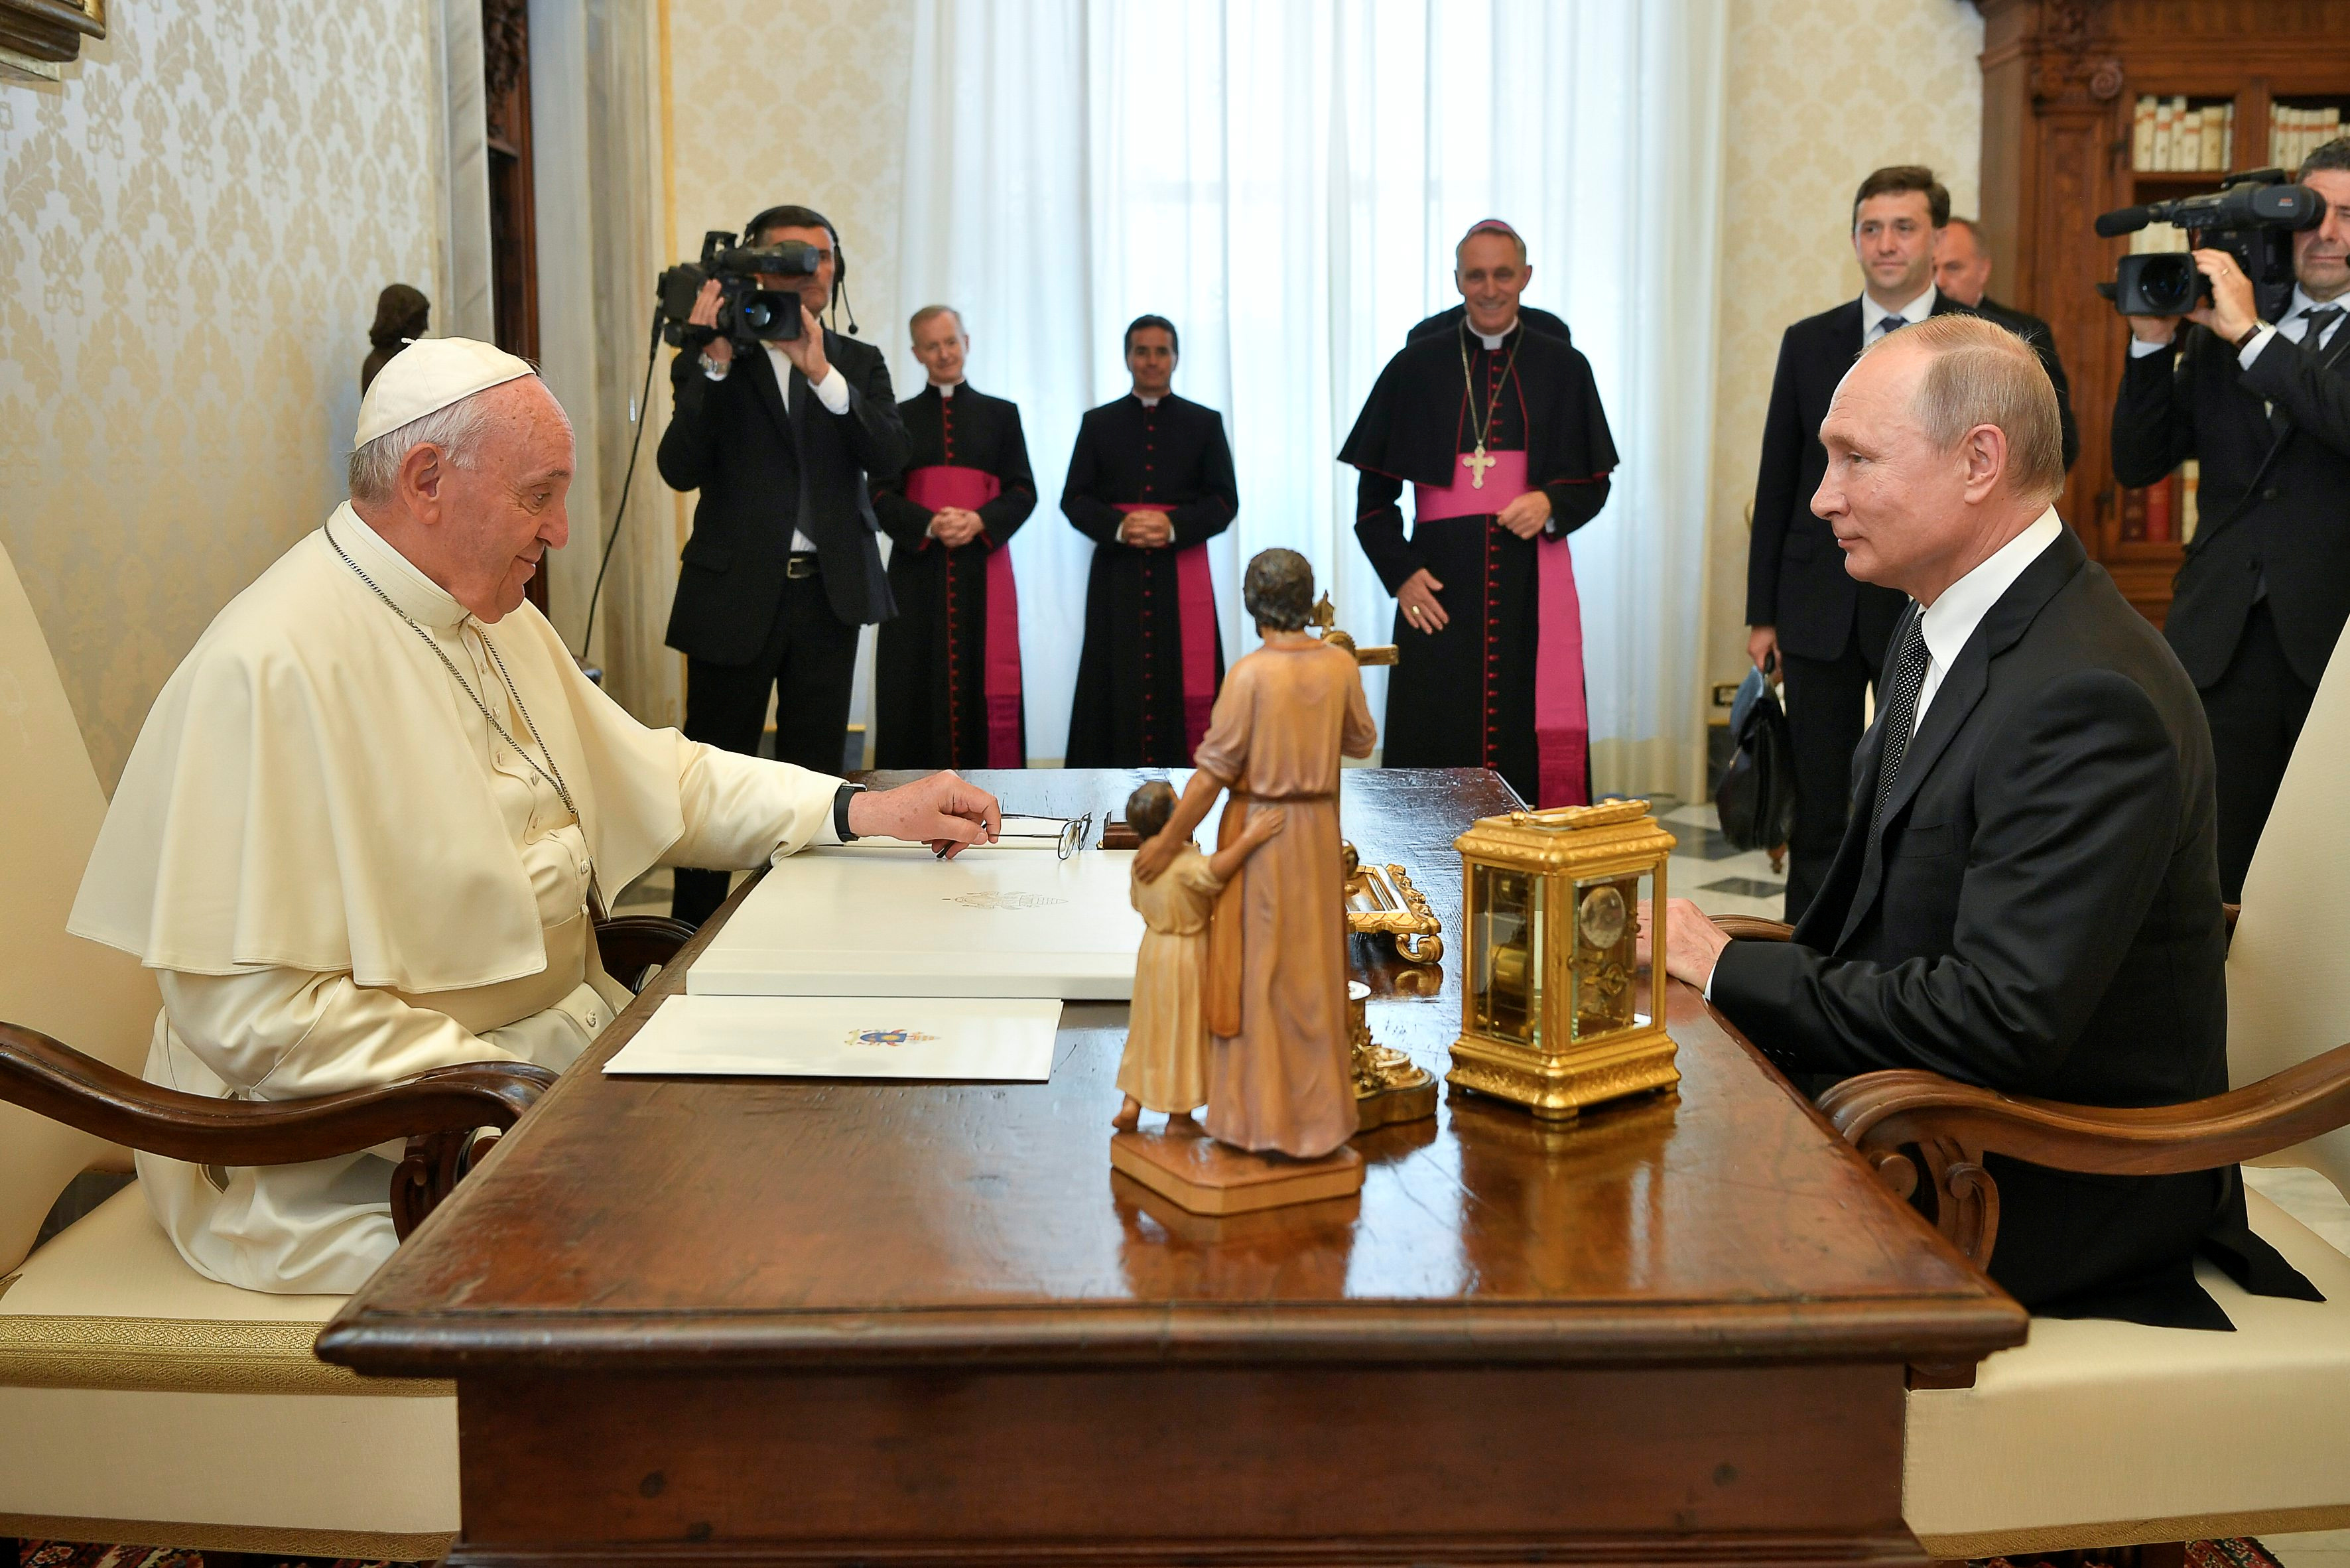 Putin chega 1 hora atrasado para encontro com papa no Vaticano | VEJA